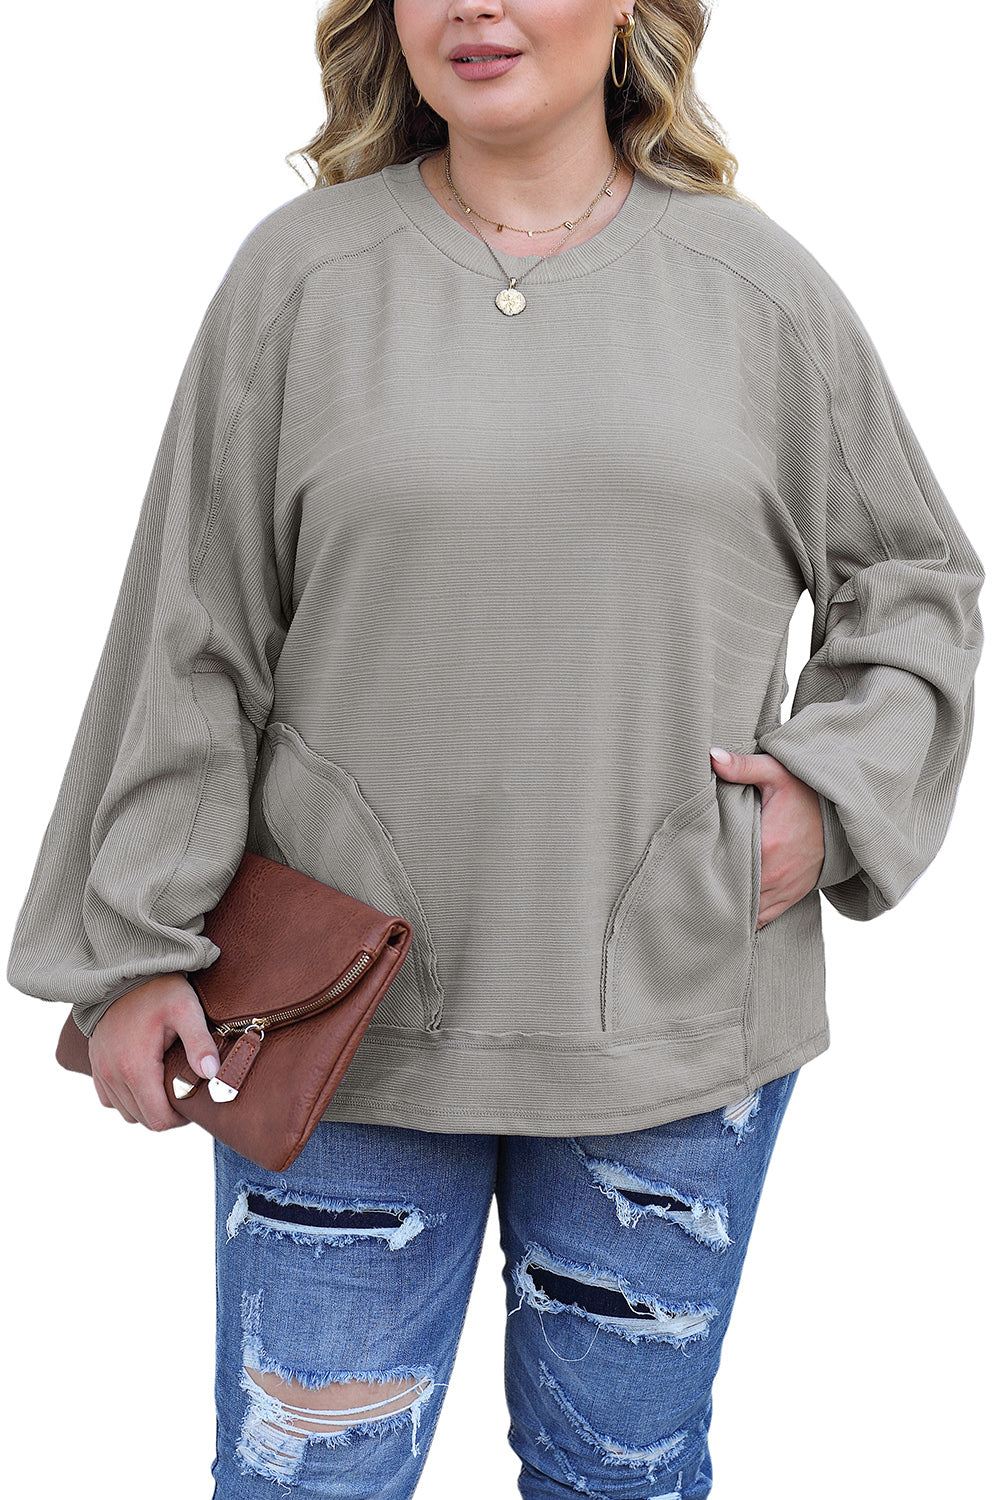 Graues, langärmliges Plus-Size-Oberteil mit gerippten Seitentaschen